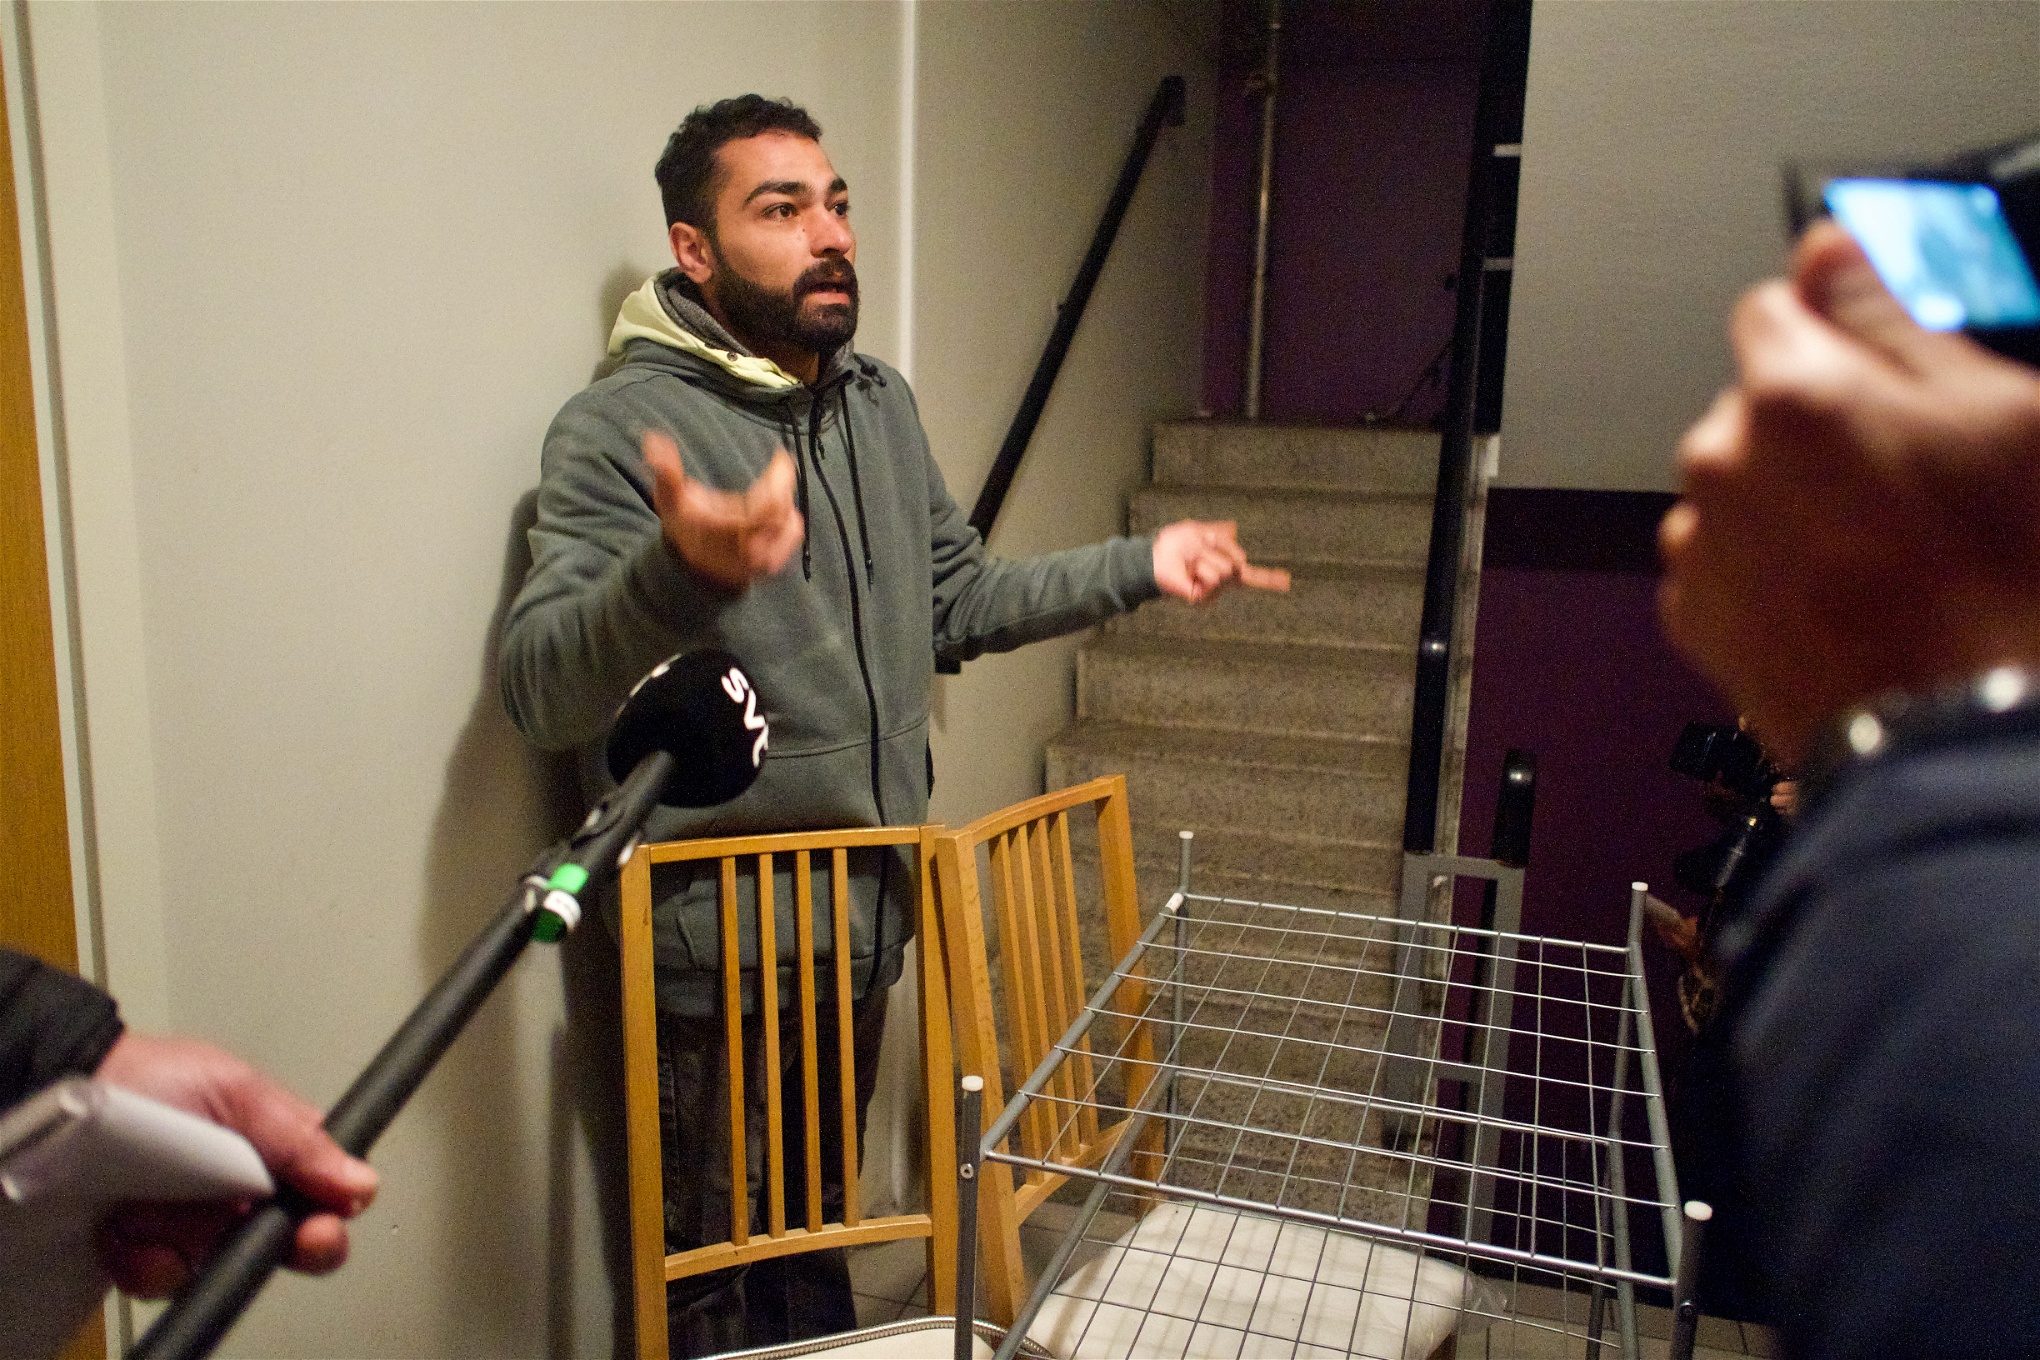 Hassan Zalha intervjuas av olika medier i trapphuset under den påbörjade vräkningen. 